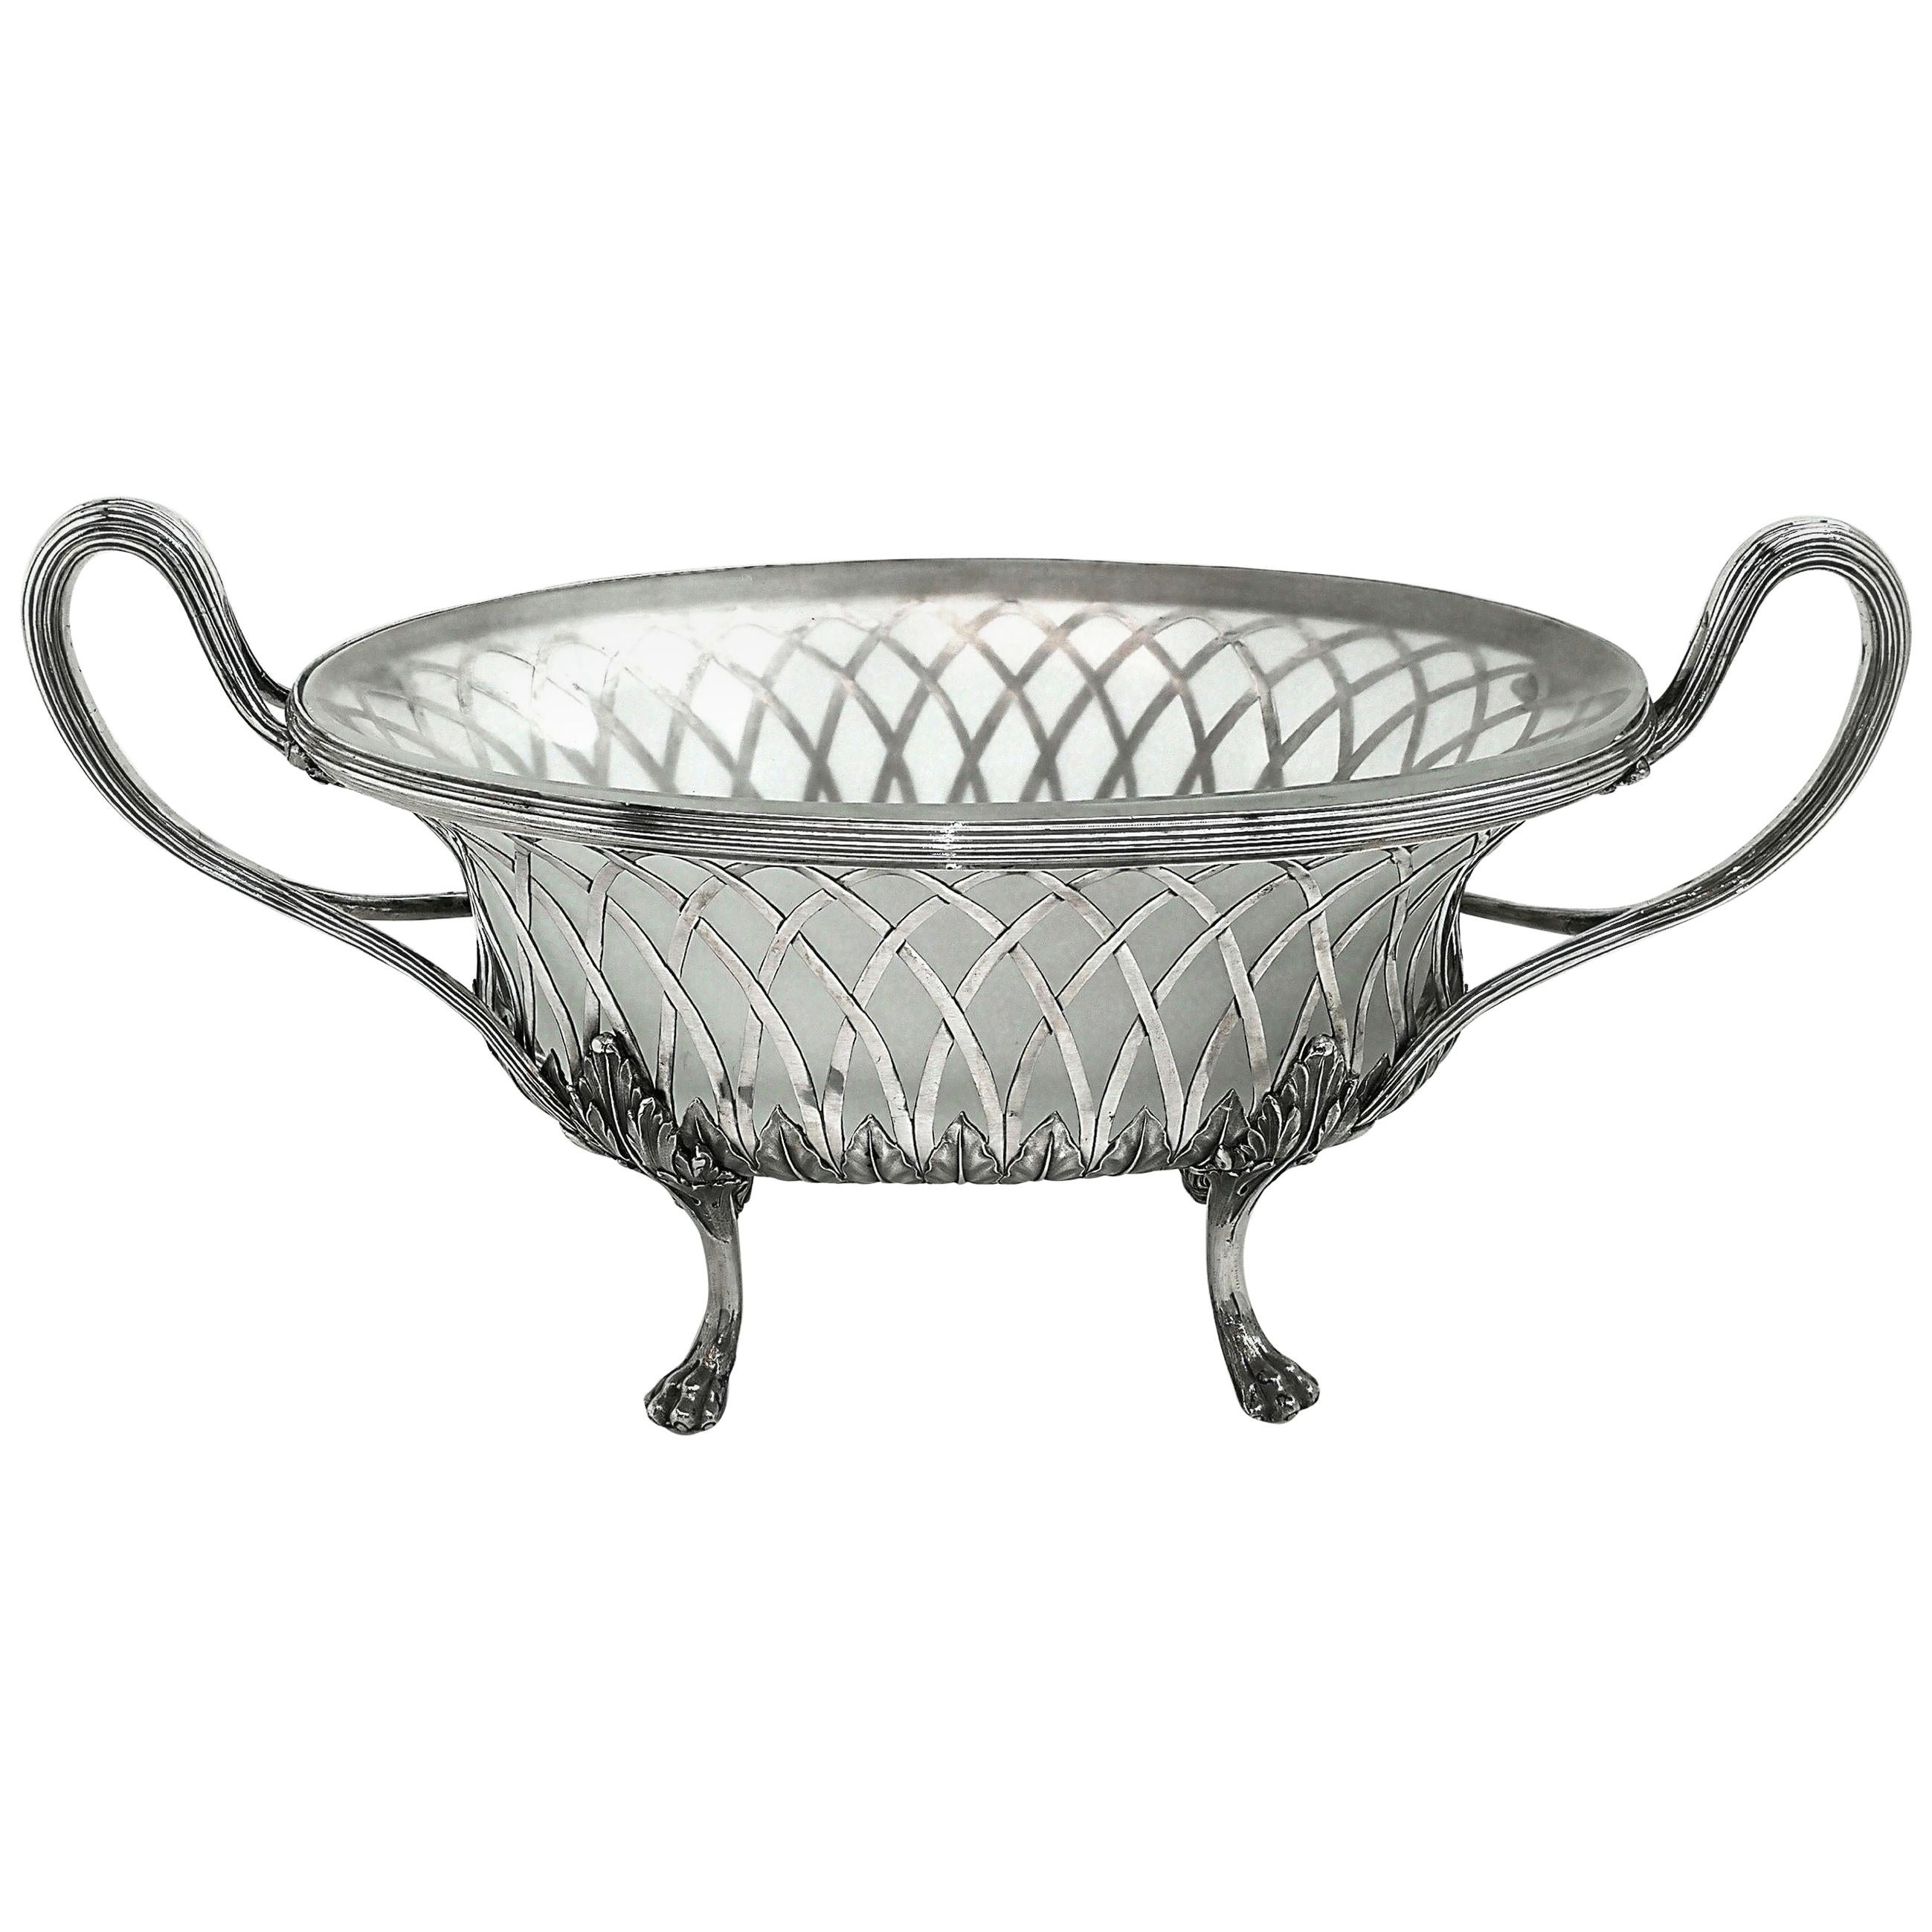 Antico piatto / cestino / jardiniere georgiano in argento e vetro, 1795 Cestino da dessert in vendita